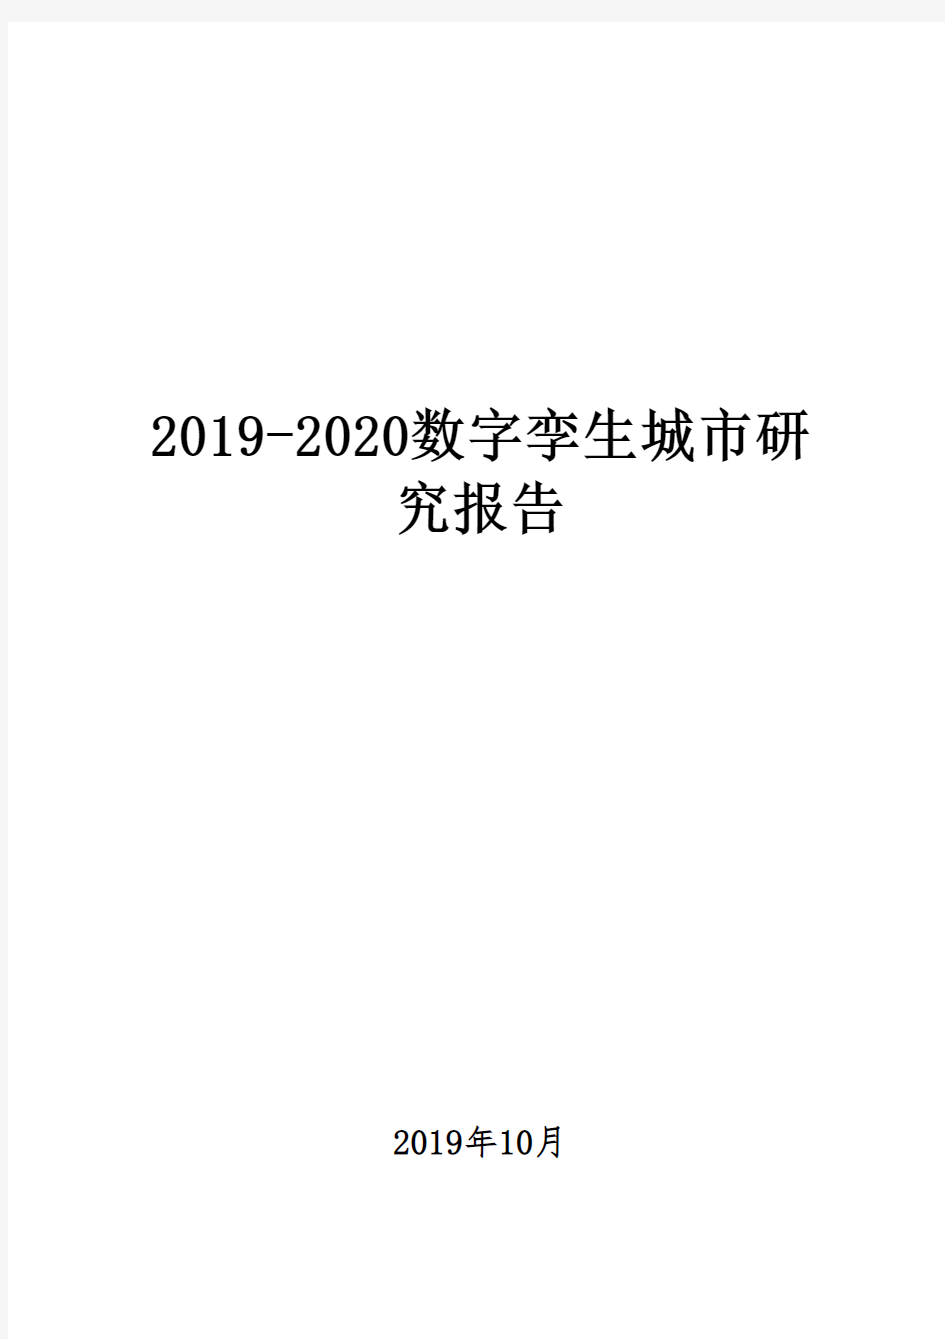 2019-2020数字孪生城市研究报告